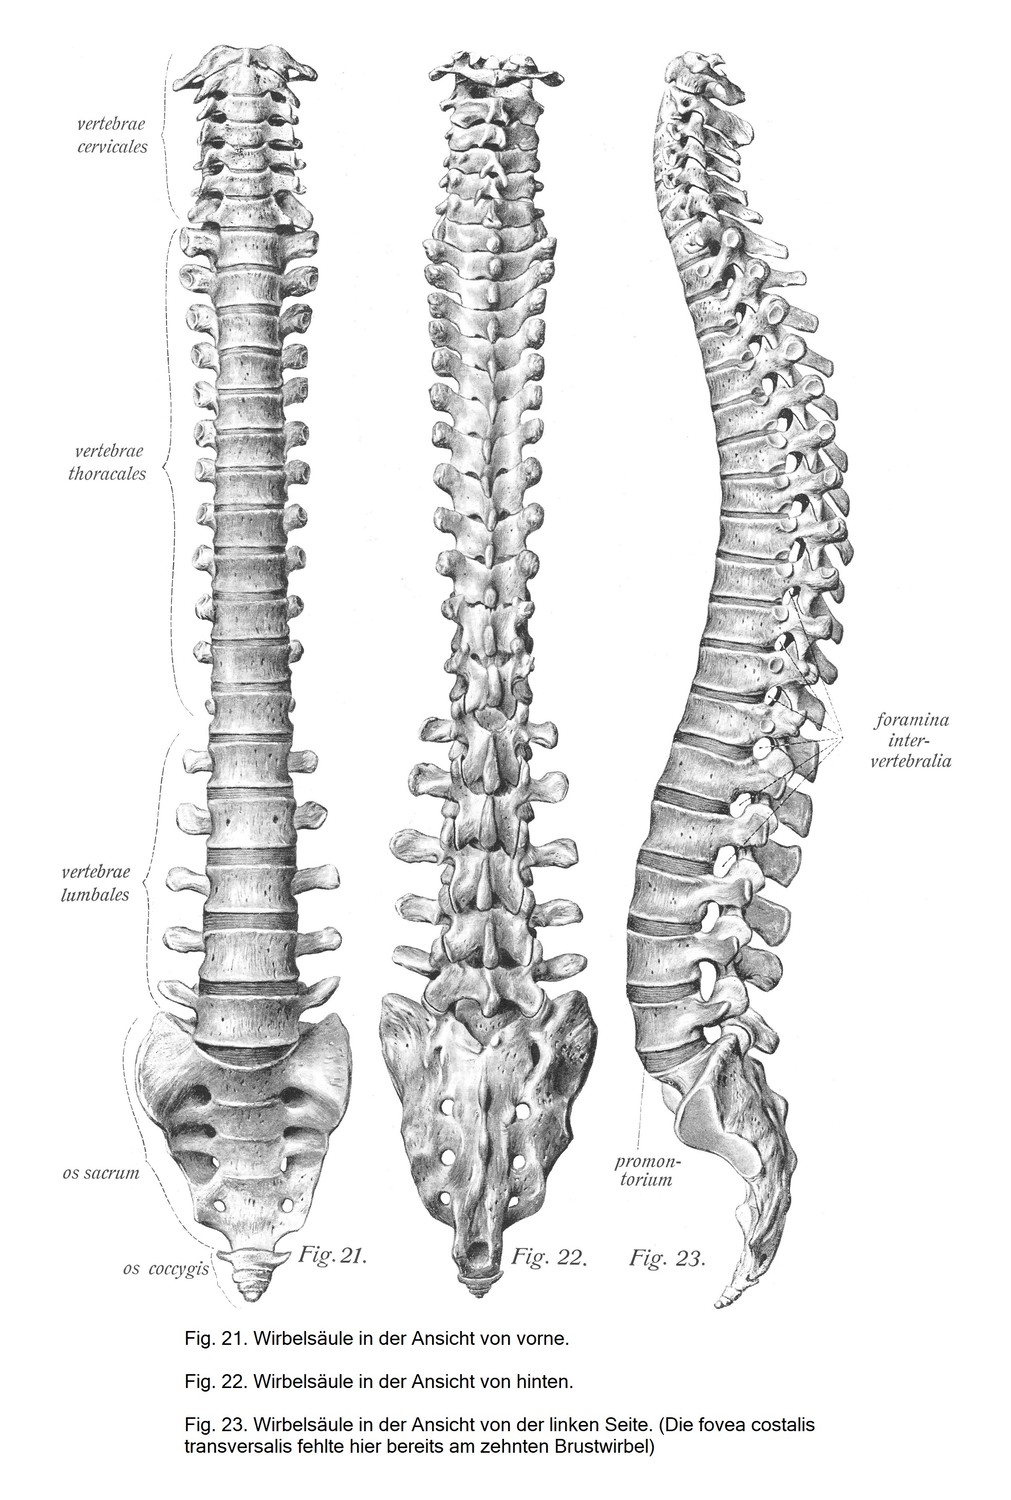 Wirbelsäule, columna vertebralis